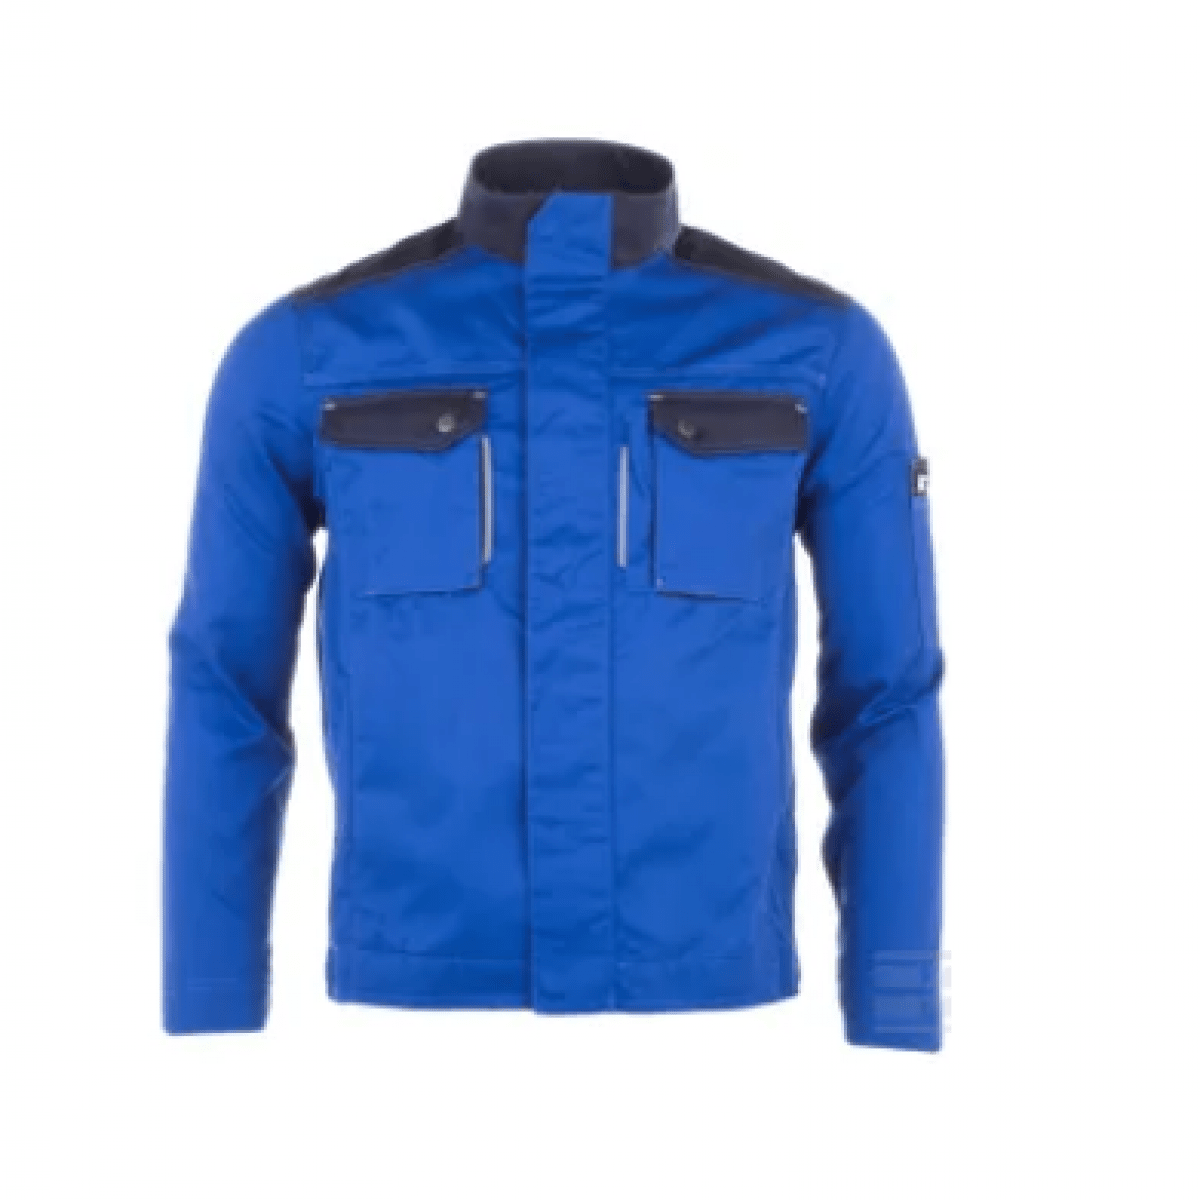 GK/KW101030083054 Pracovná bunda, modrá, veľkosť L, Kramp